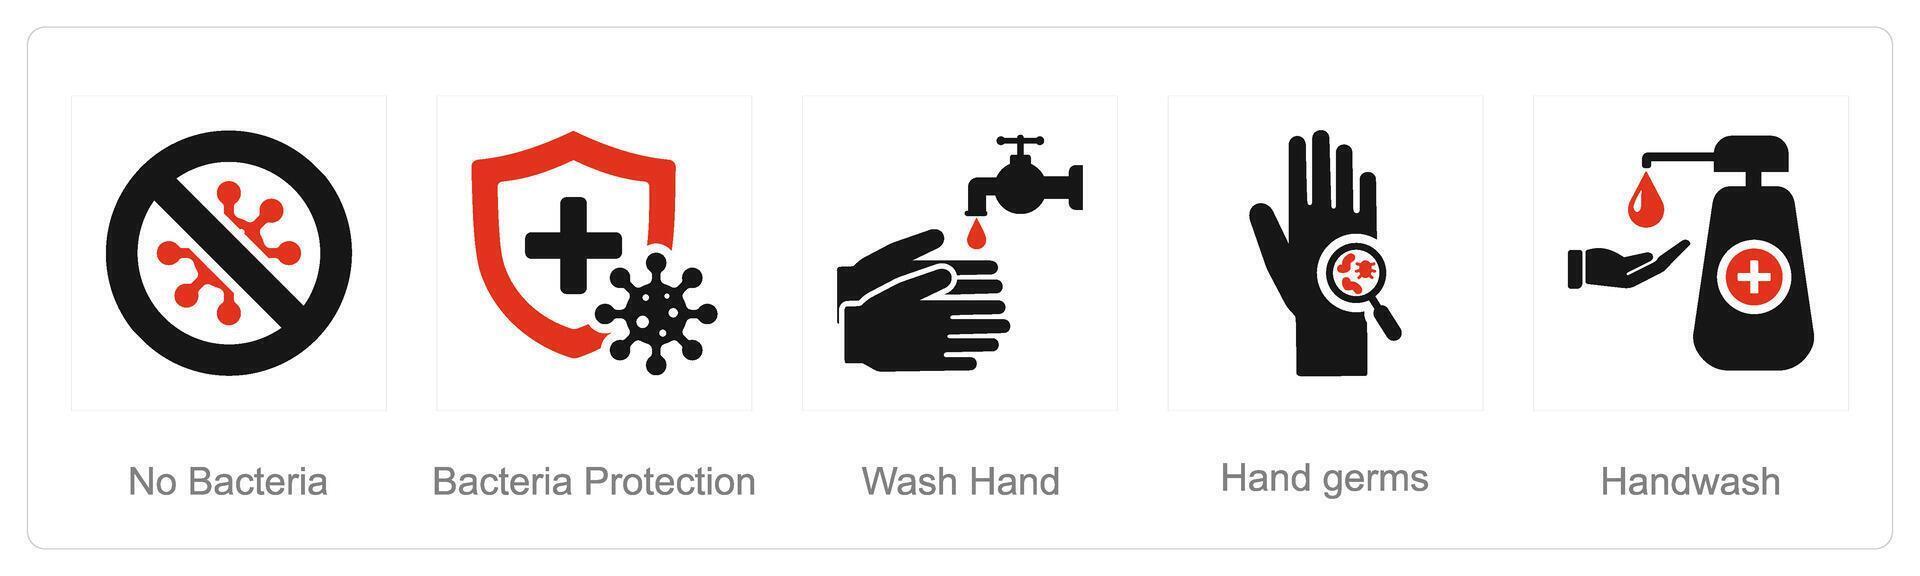 uma conjunto do 5 higiene ícones Como não bactérias, bactérias proteção, lavar mão vetor